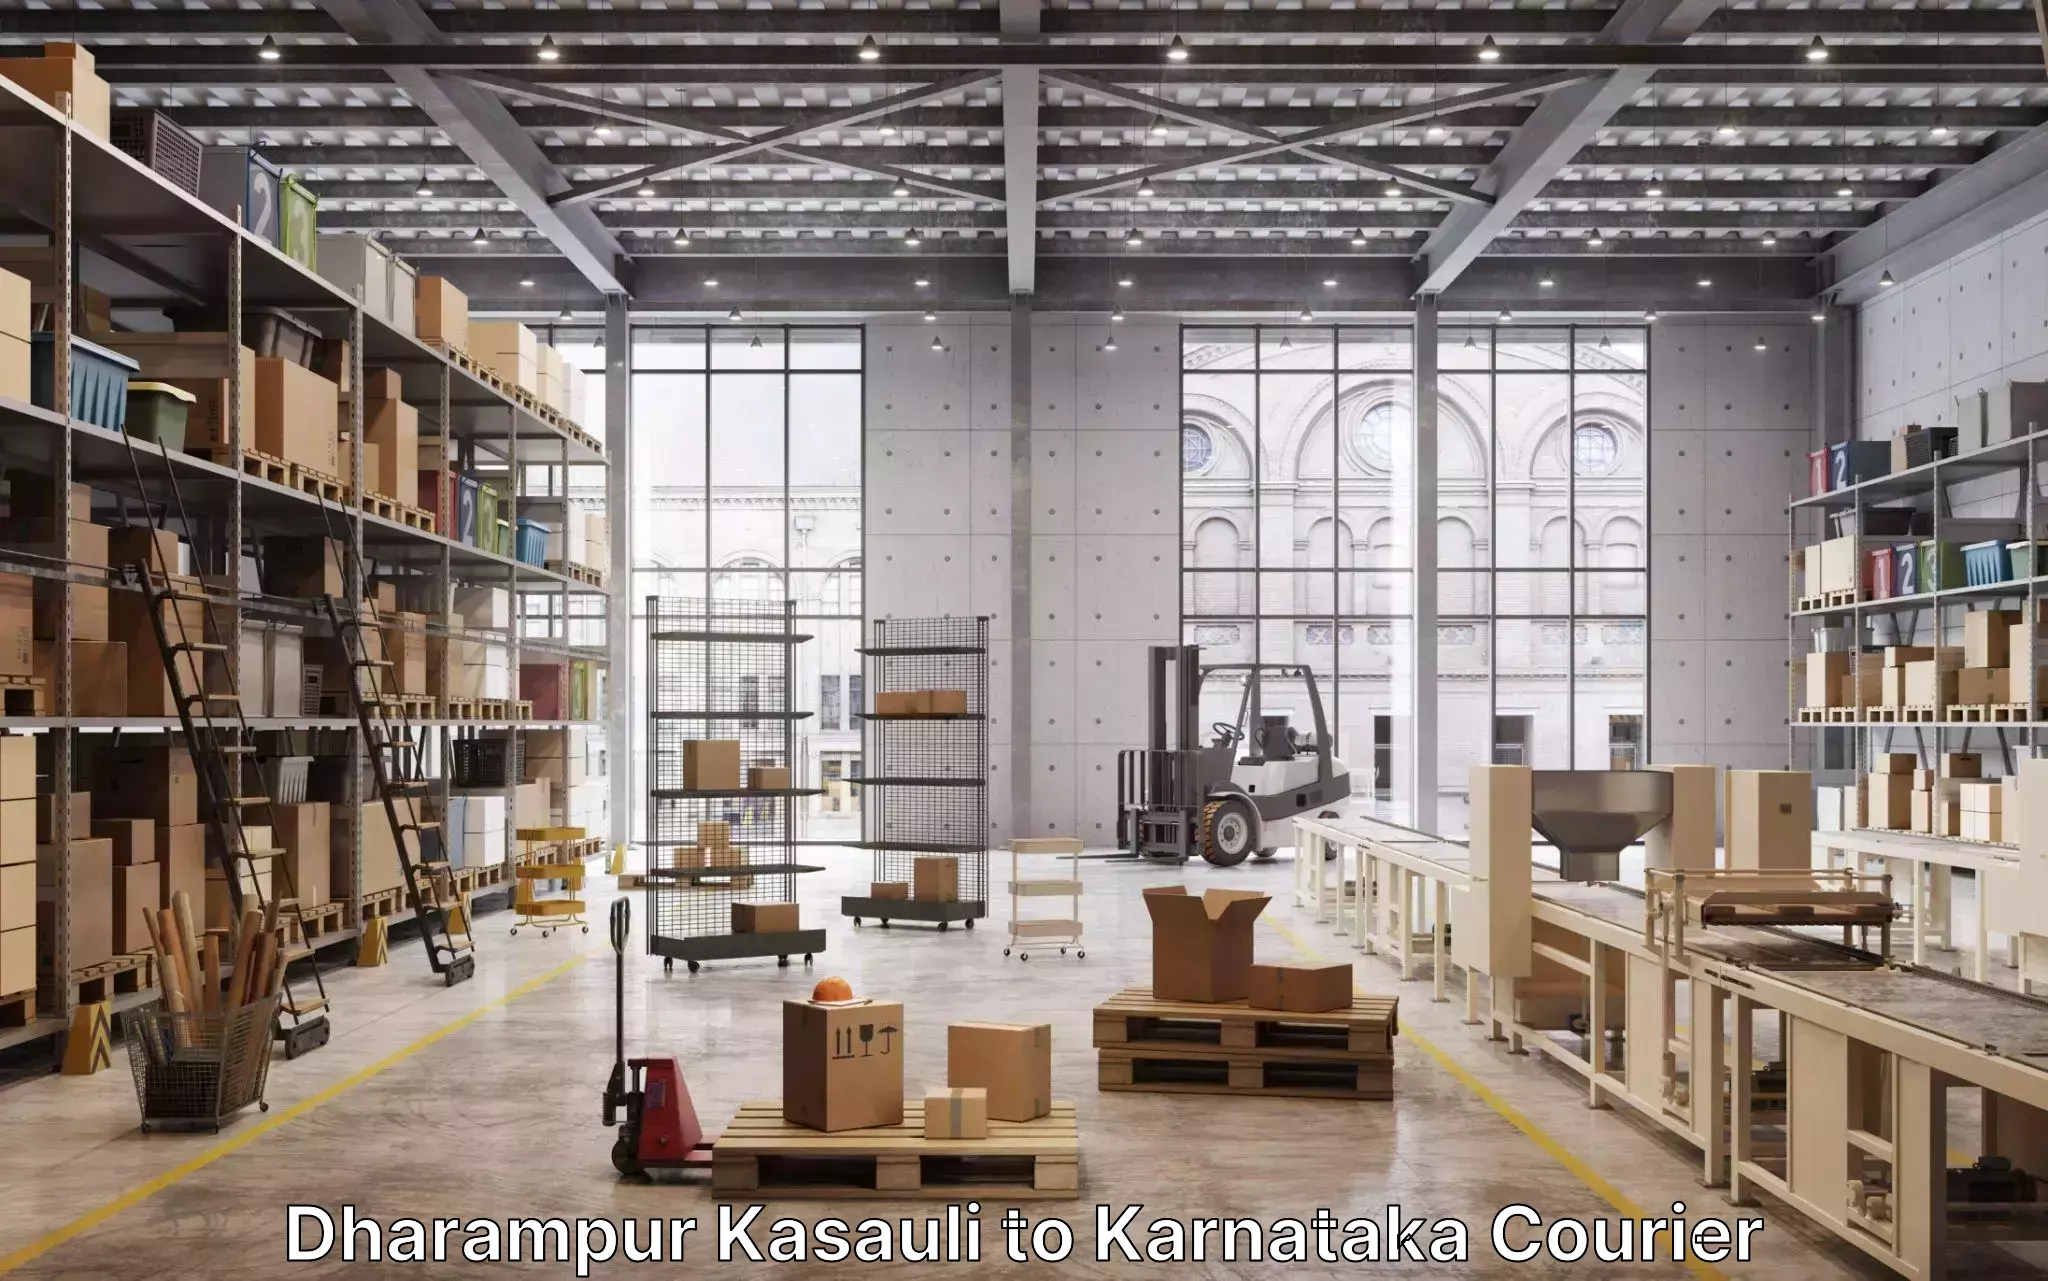 Furniture moving experts Dharampur Kasauli to Bagalkot